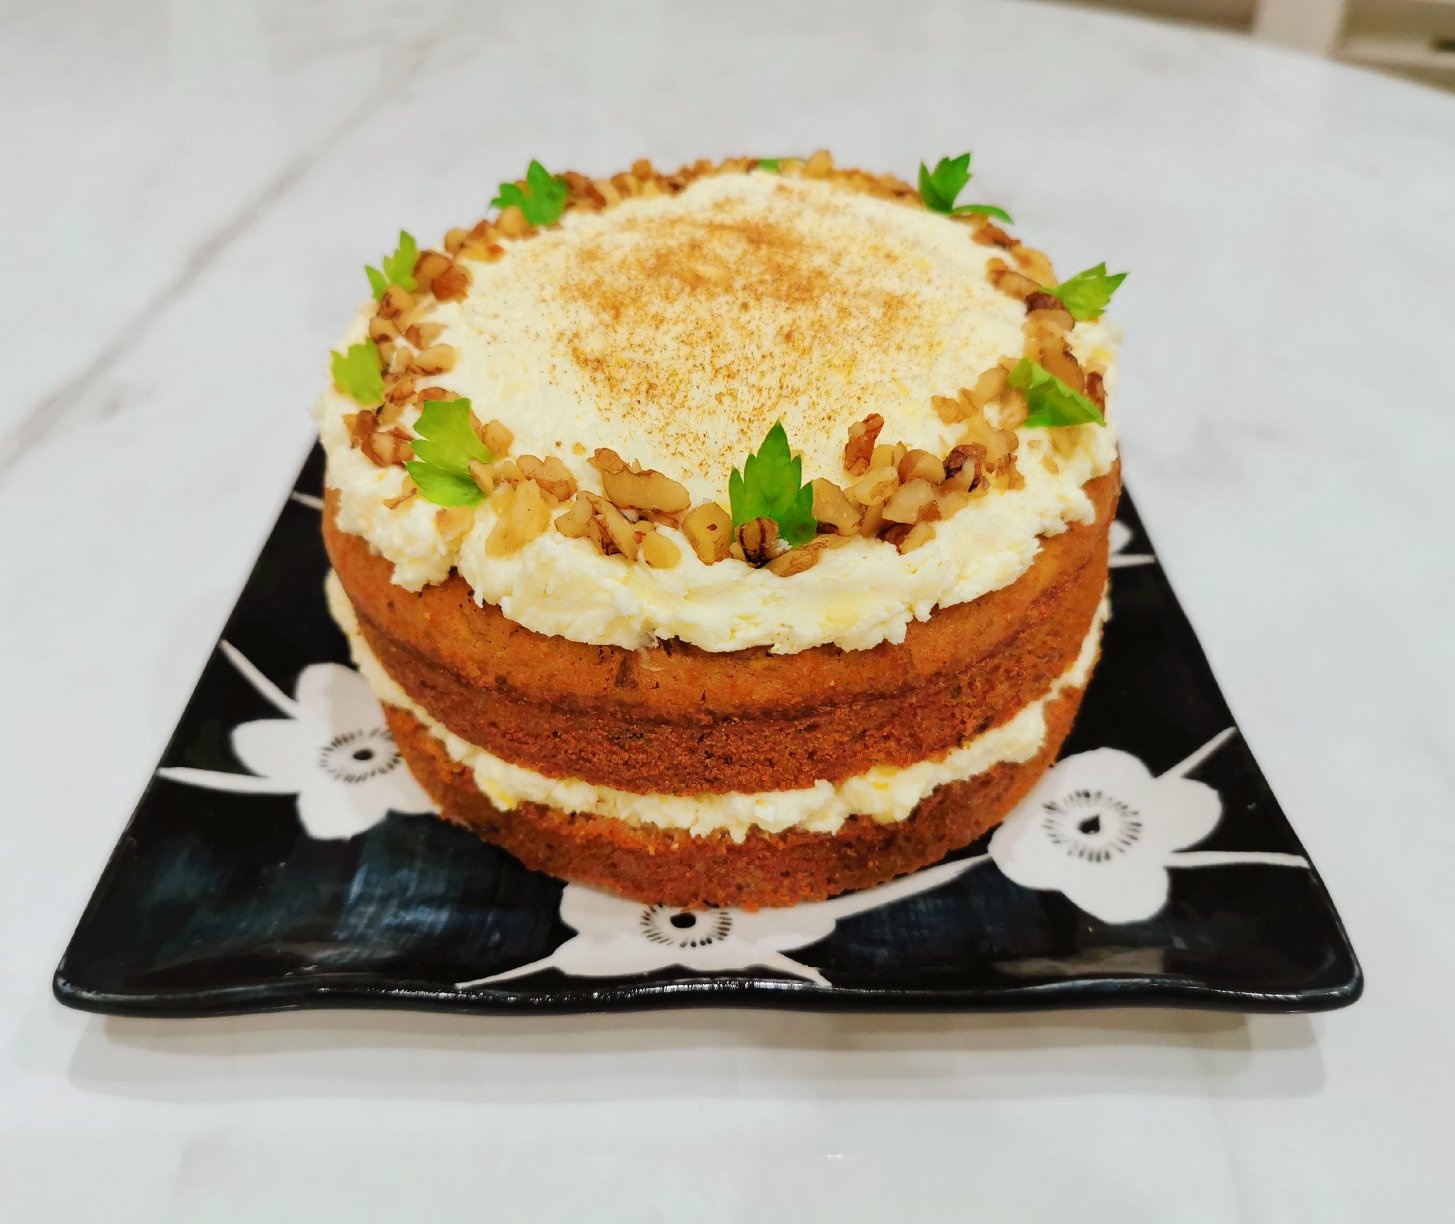 坚果胡萝卜蛋糕/香甜不腻的改良配方+装饰手法/烘焙视频蛋糕篇12「美式蛋糕」